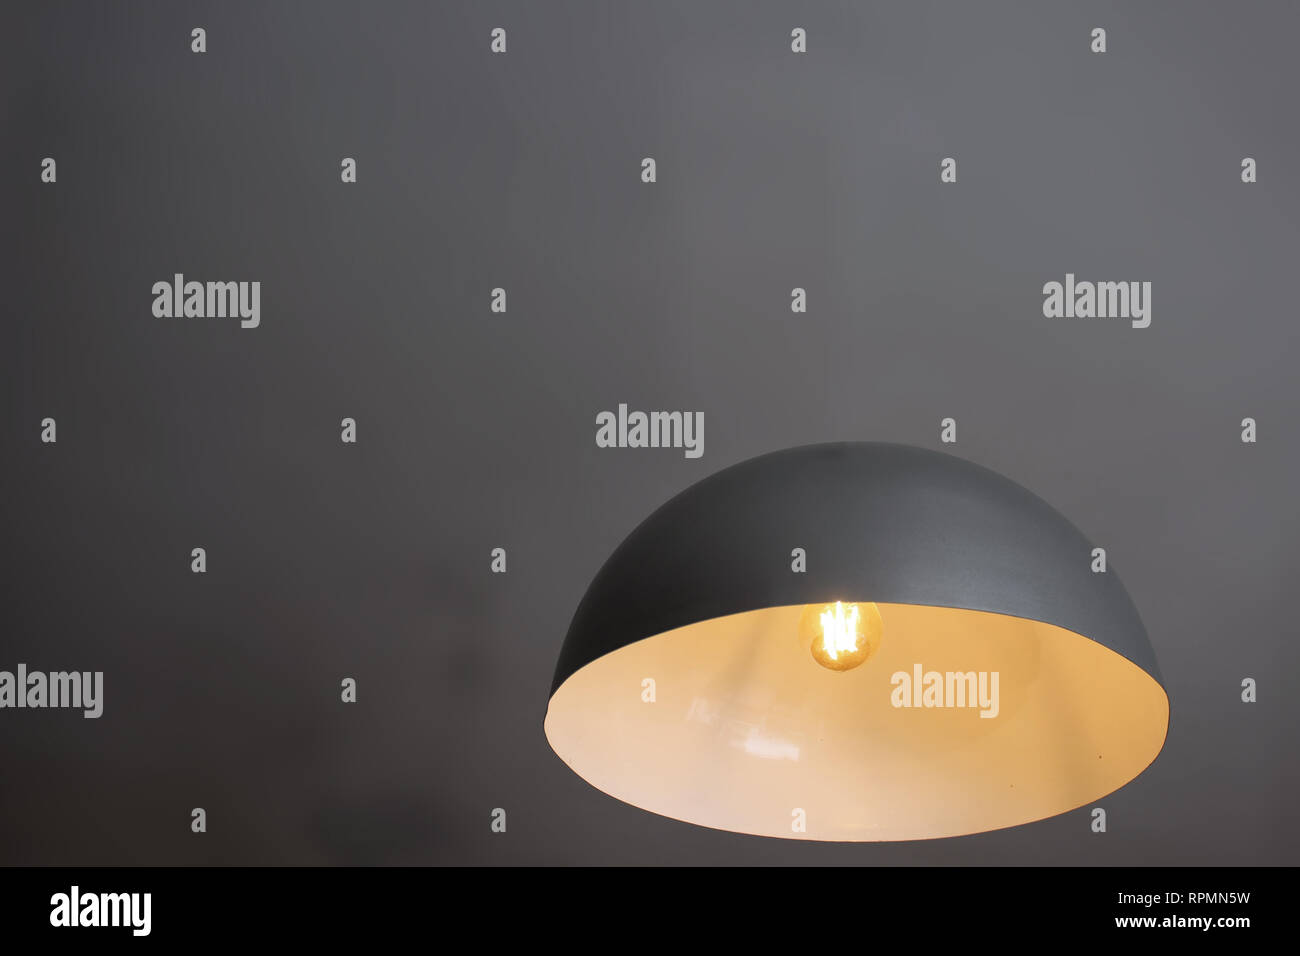 Floating lampe Illusion mit Glühbirne - Kreativität Konzept Kunst, auf grauem Hintergrund Stockfoto